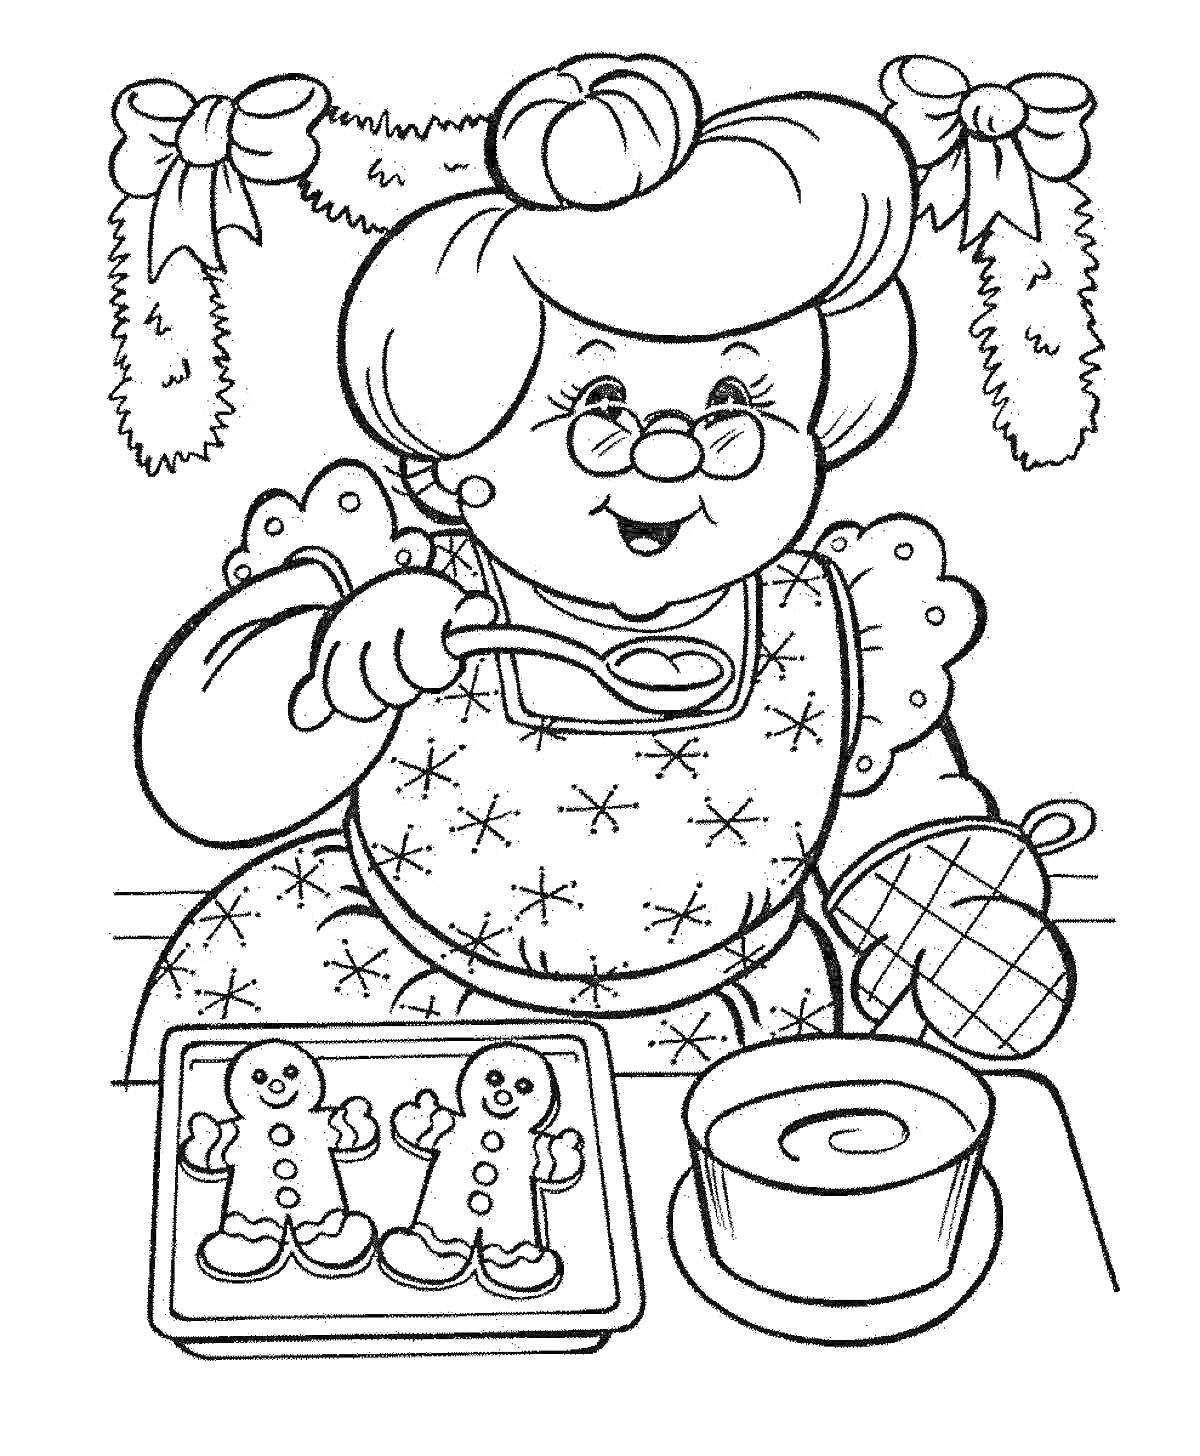 Раскраска Бабушка делает печенье, висячие украшения в виде лент и еловых ветвей, чашка с напитком, противень с имбирными человечками, прихватка, очки